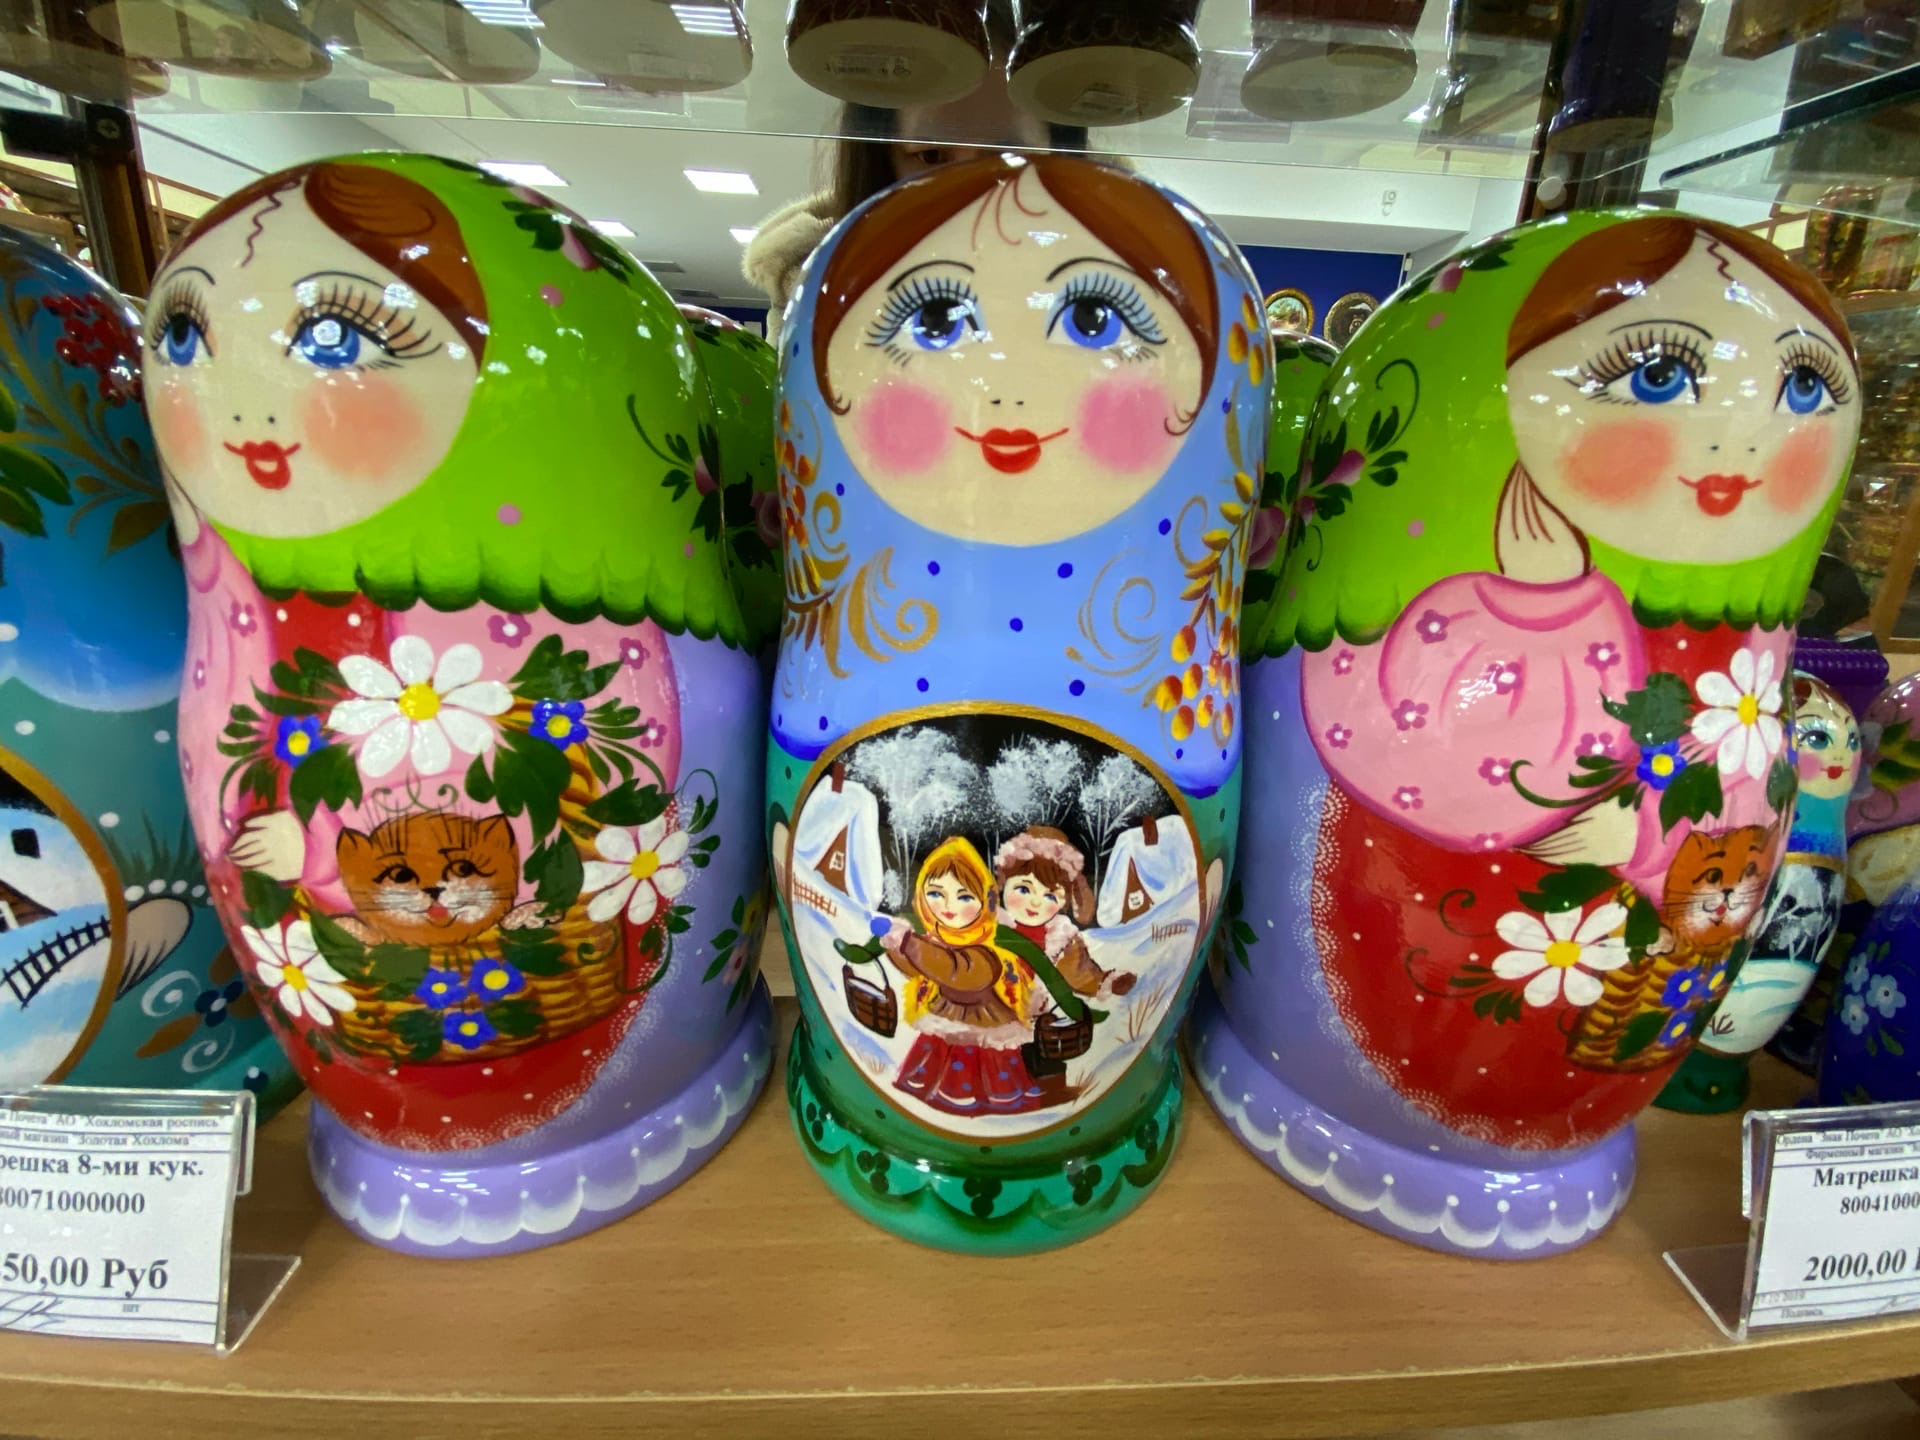 Cувениры из Нижнего Новгорода: что привезти родным и друзьям в подарок